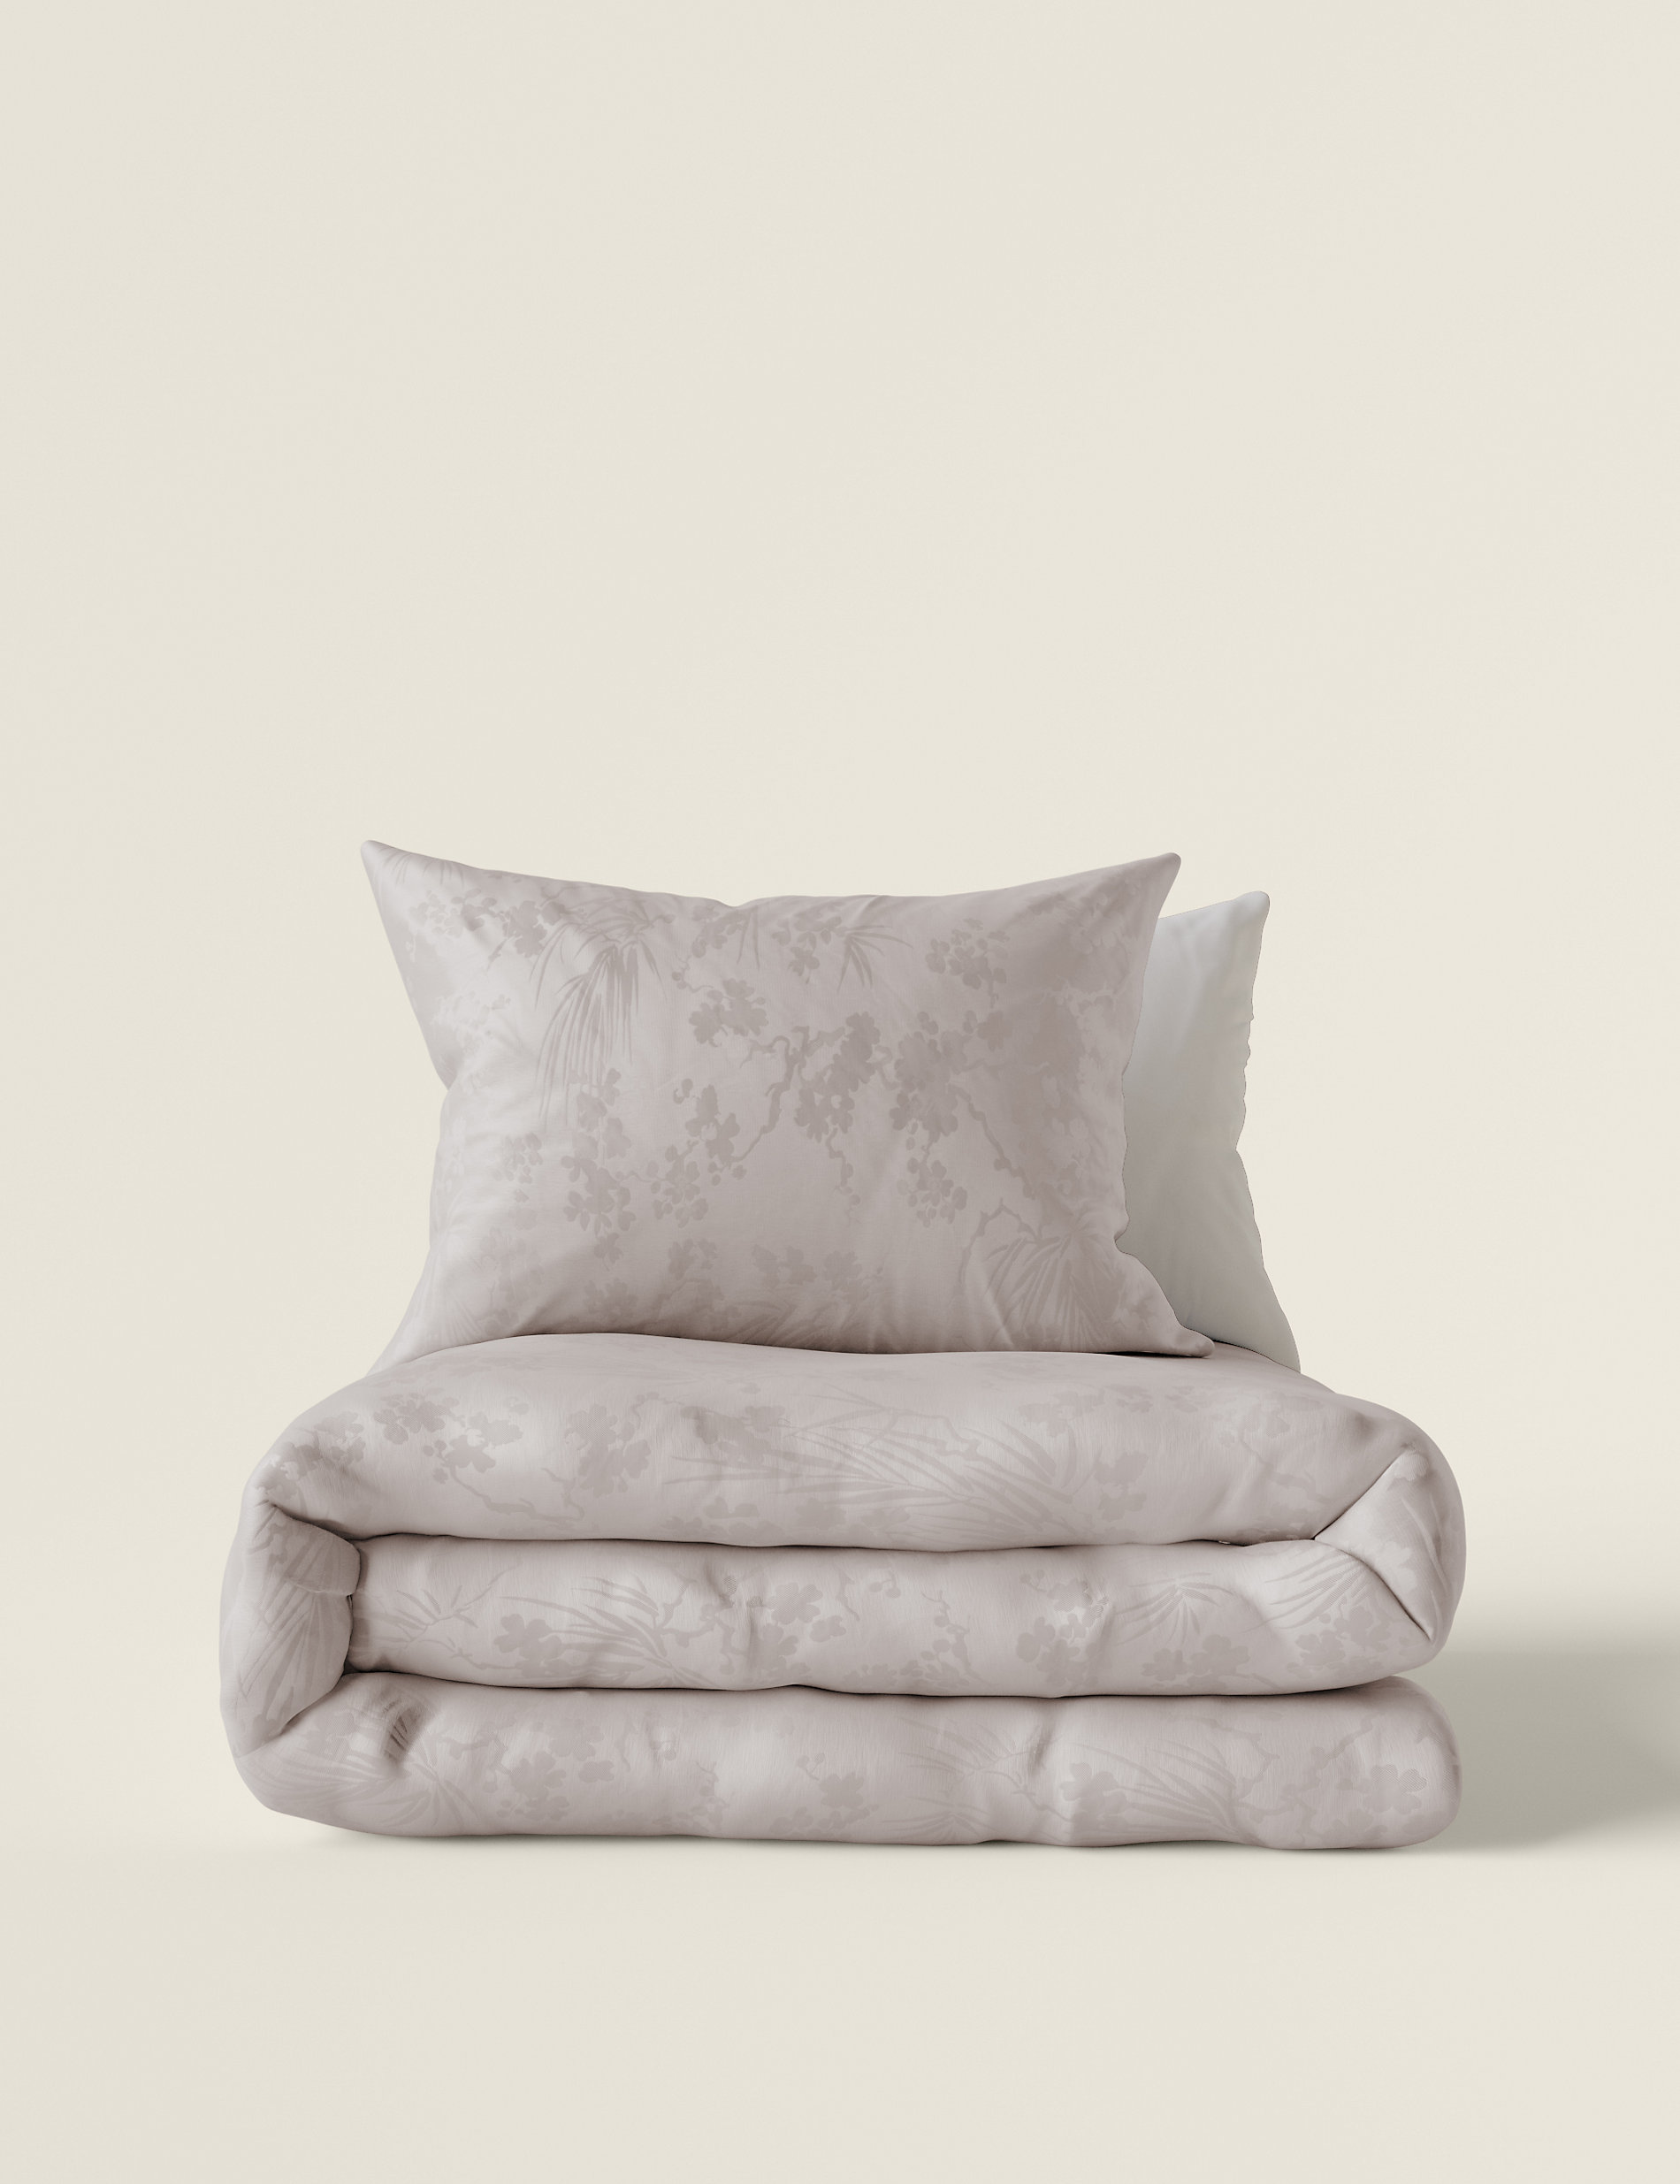 Pure Cotton Jacquard Blossom Bedding Set